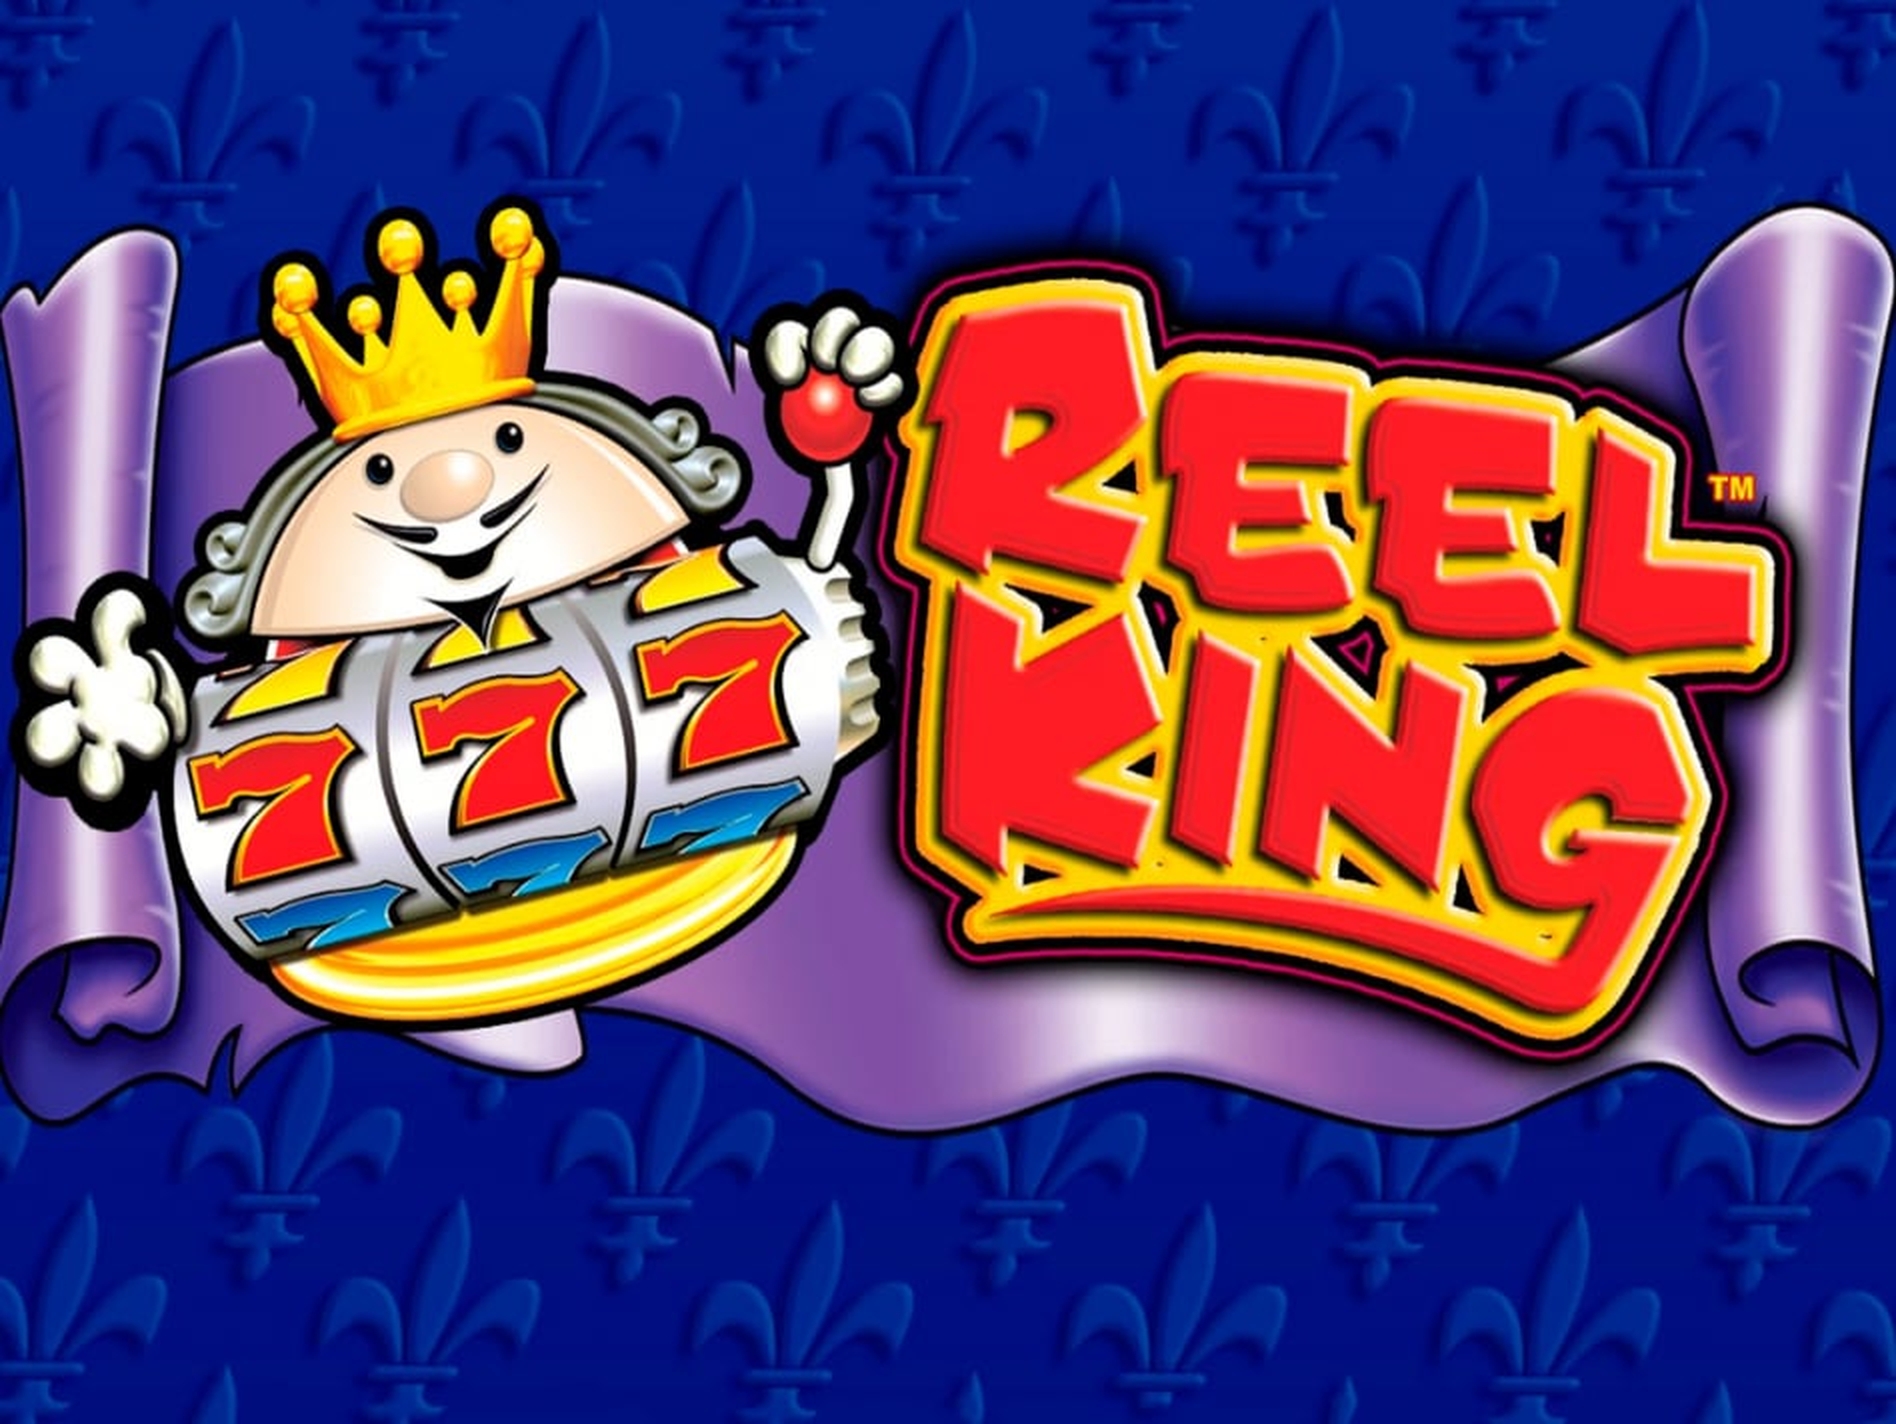 Reel King demo